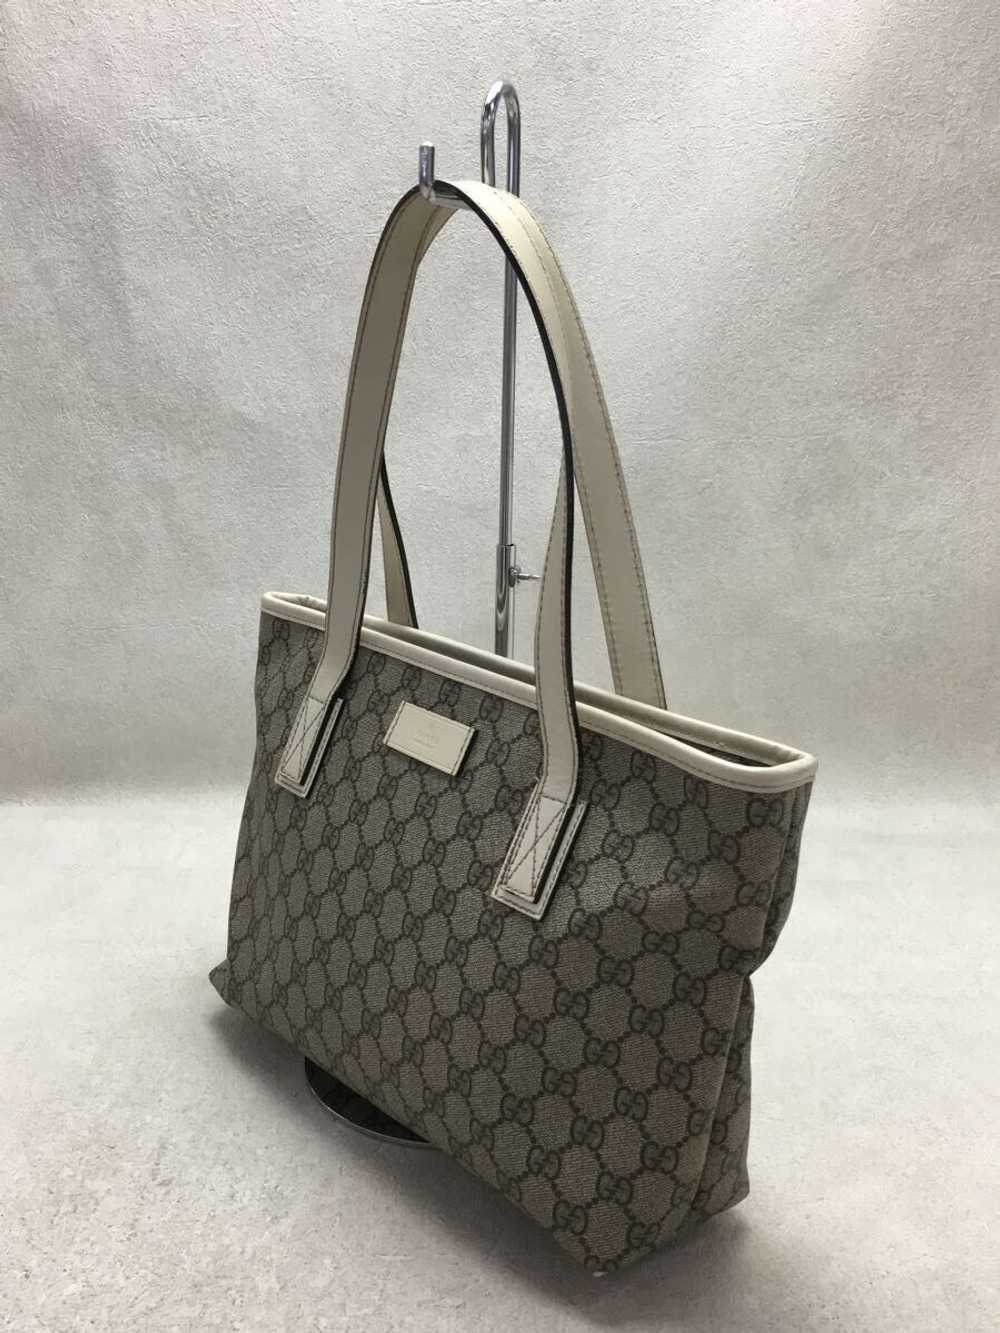 [Japan Used Bag] Used Gucci Handbag/Pvc Bag - image 2